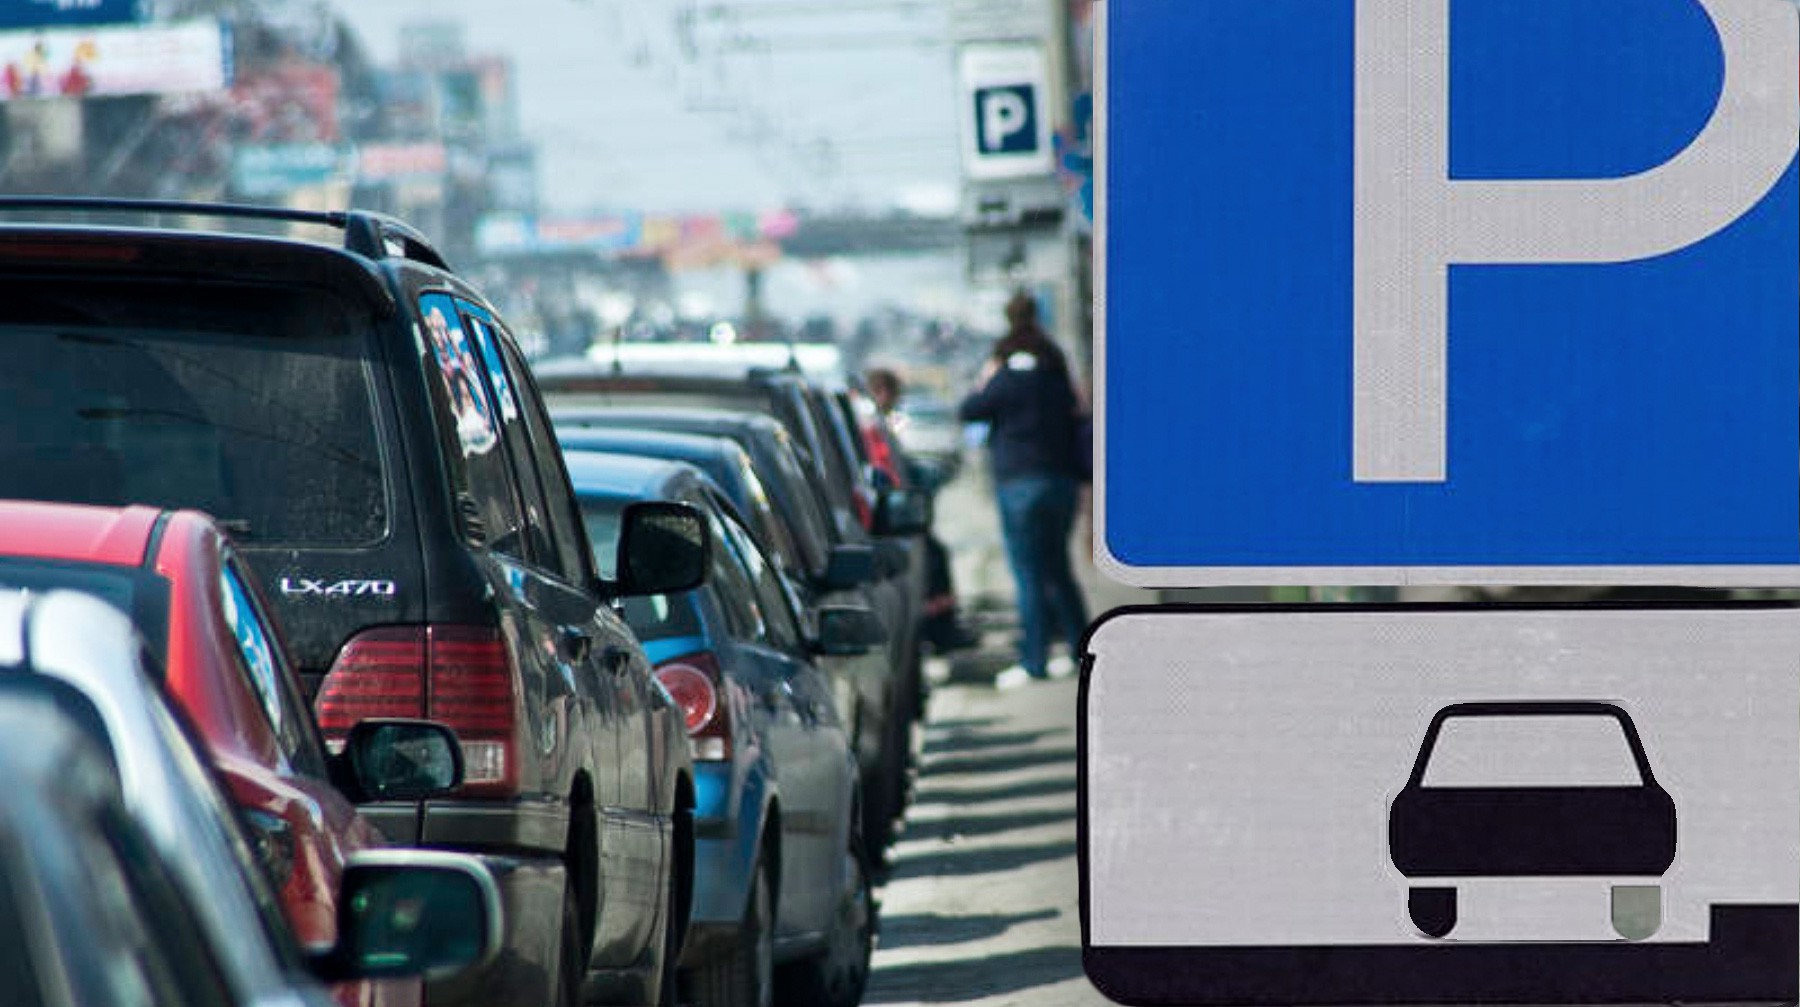 Dailystorm - Время бесплатной парковки сокращено до пяти минут по всей Москве